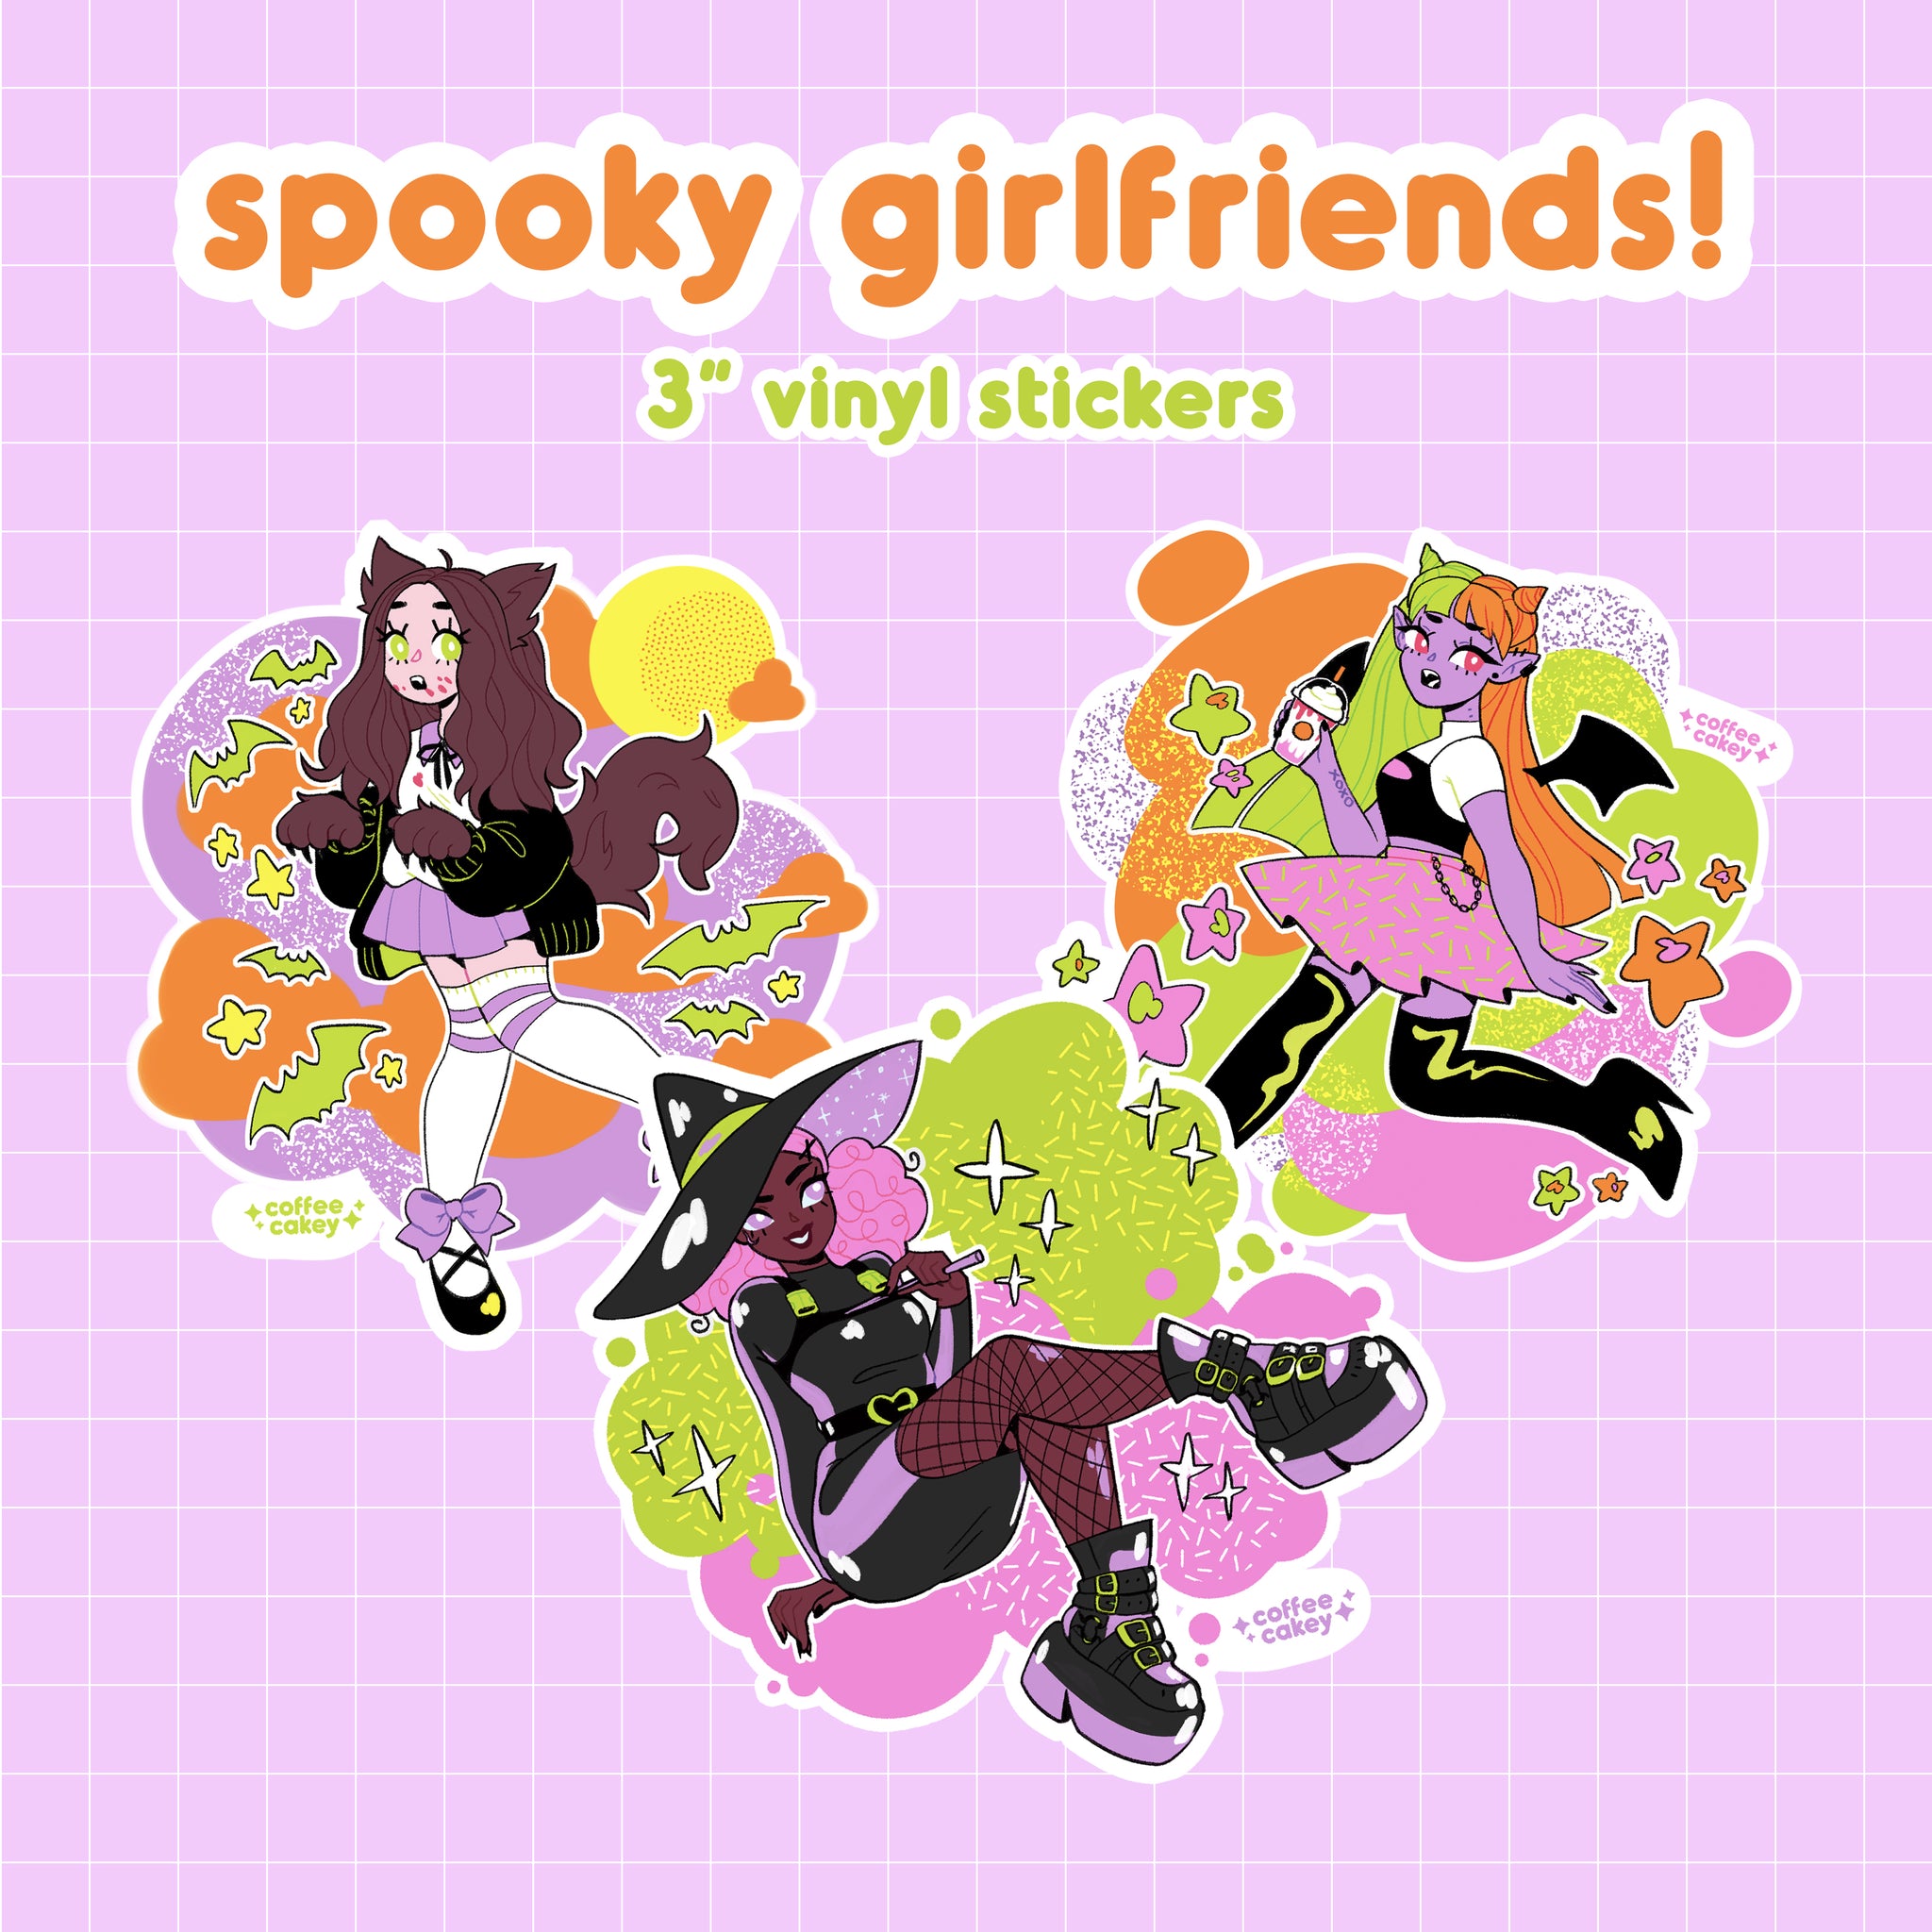 spooky girlfriends sitcker pack!